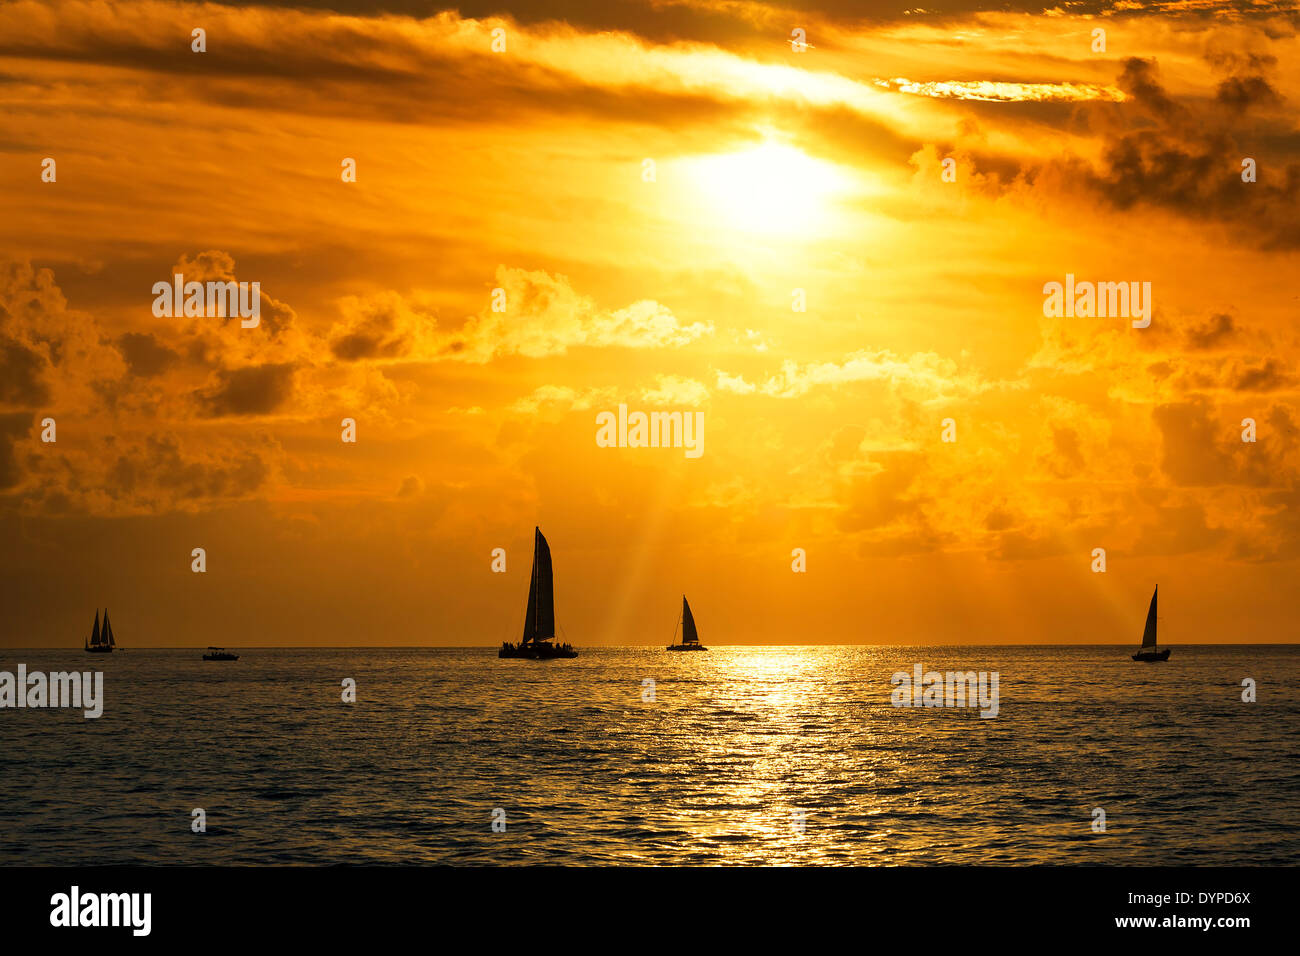 Avis de voiliers dans la mer au coucher du soleil Banque D'Images